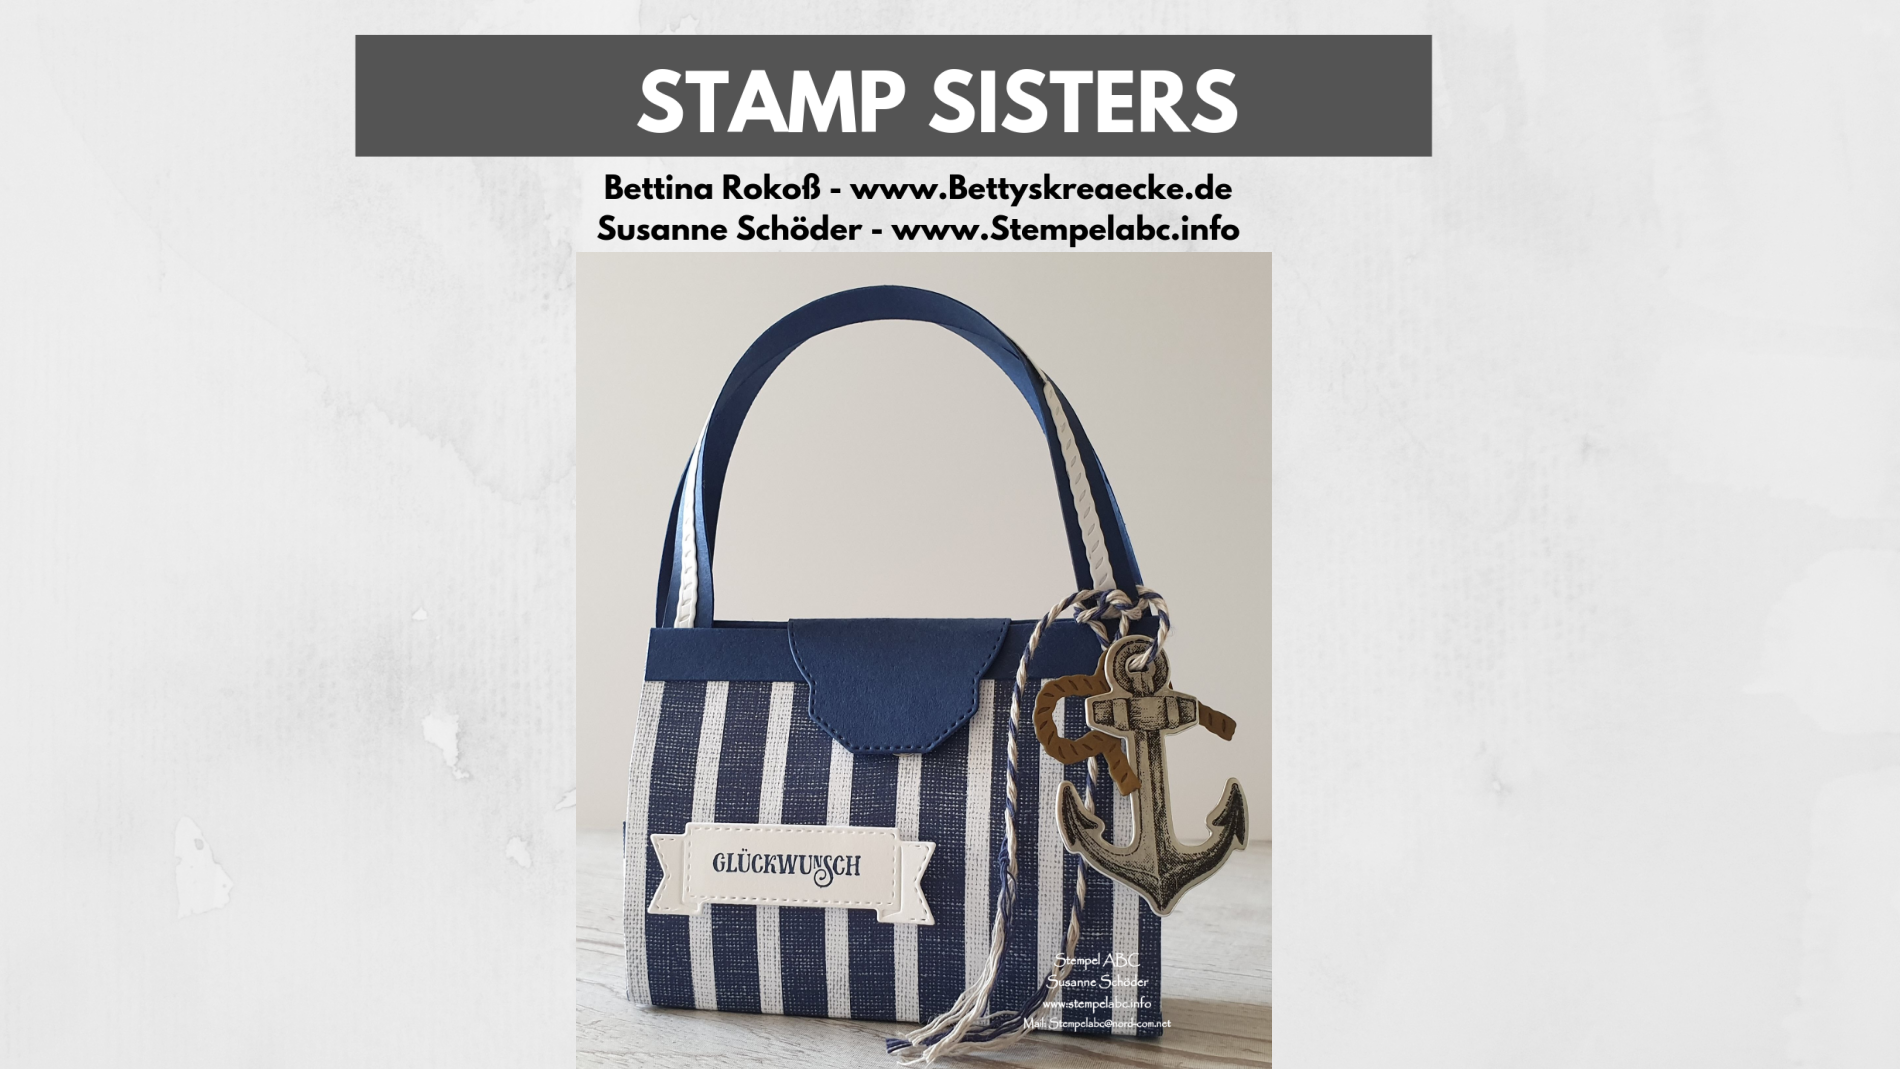 Stamp Sisters Setz die Segel mit Anleitung für die Urlaubstasche